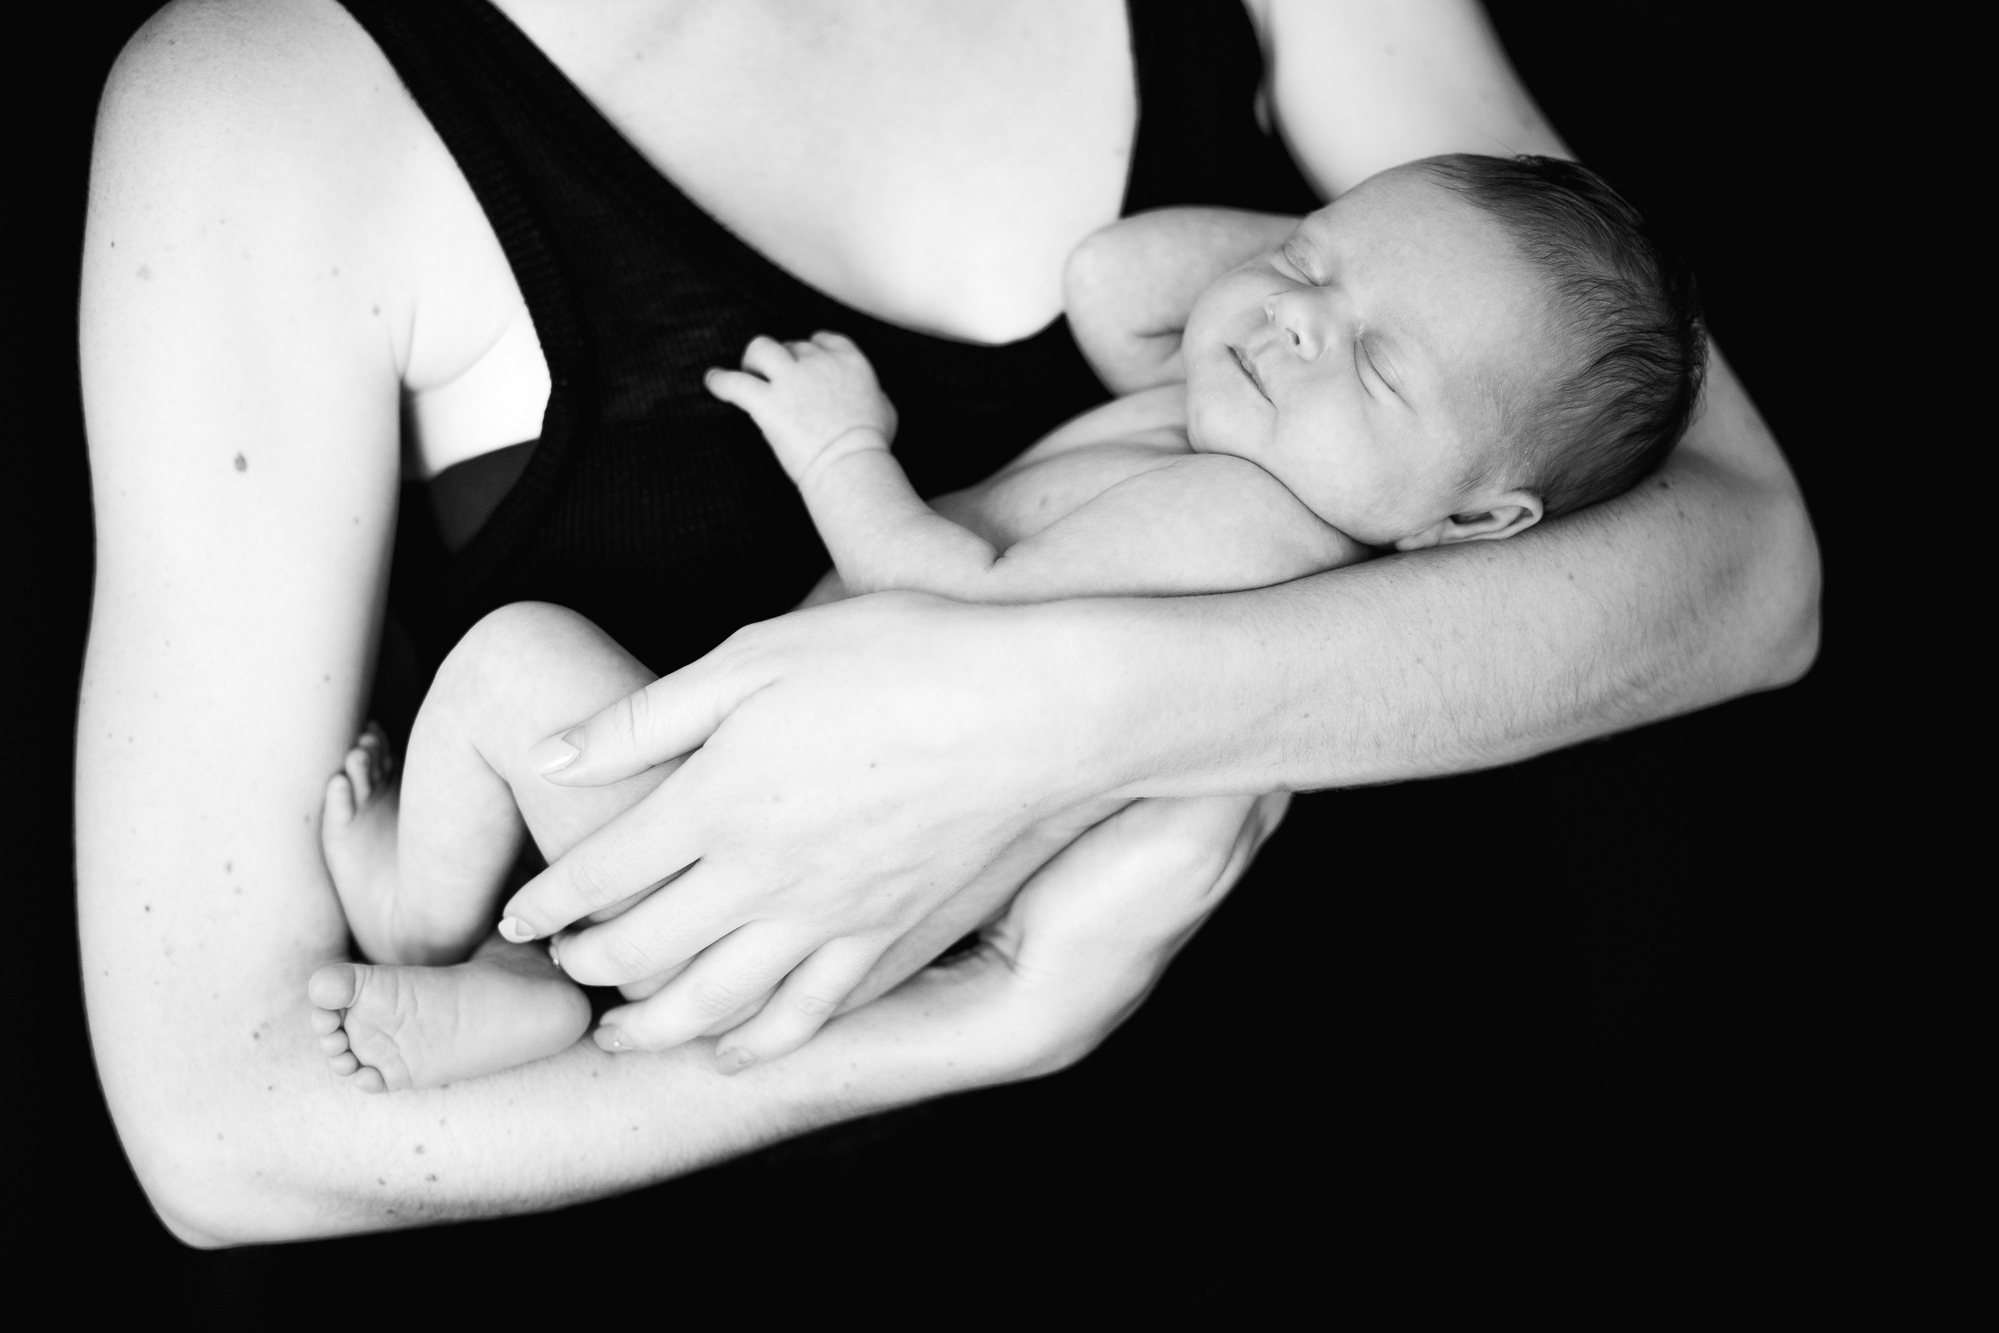 Por que o meu bebê só quer ficar no colo? | Jornal da Orla